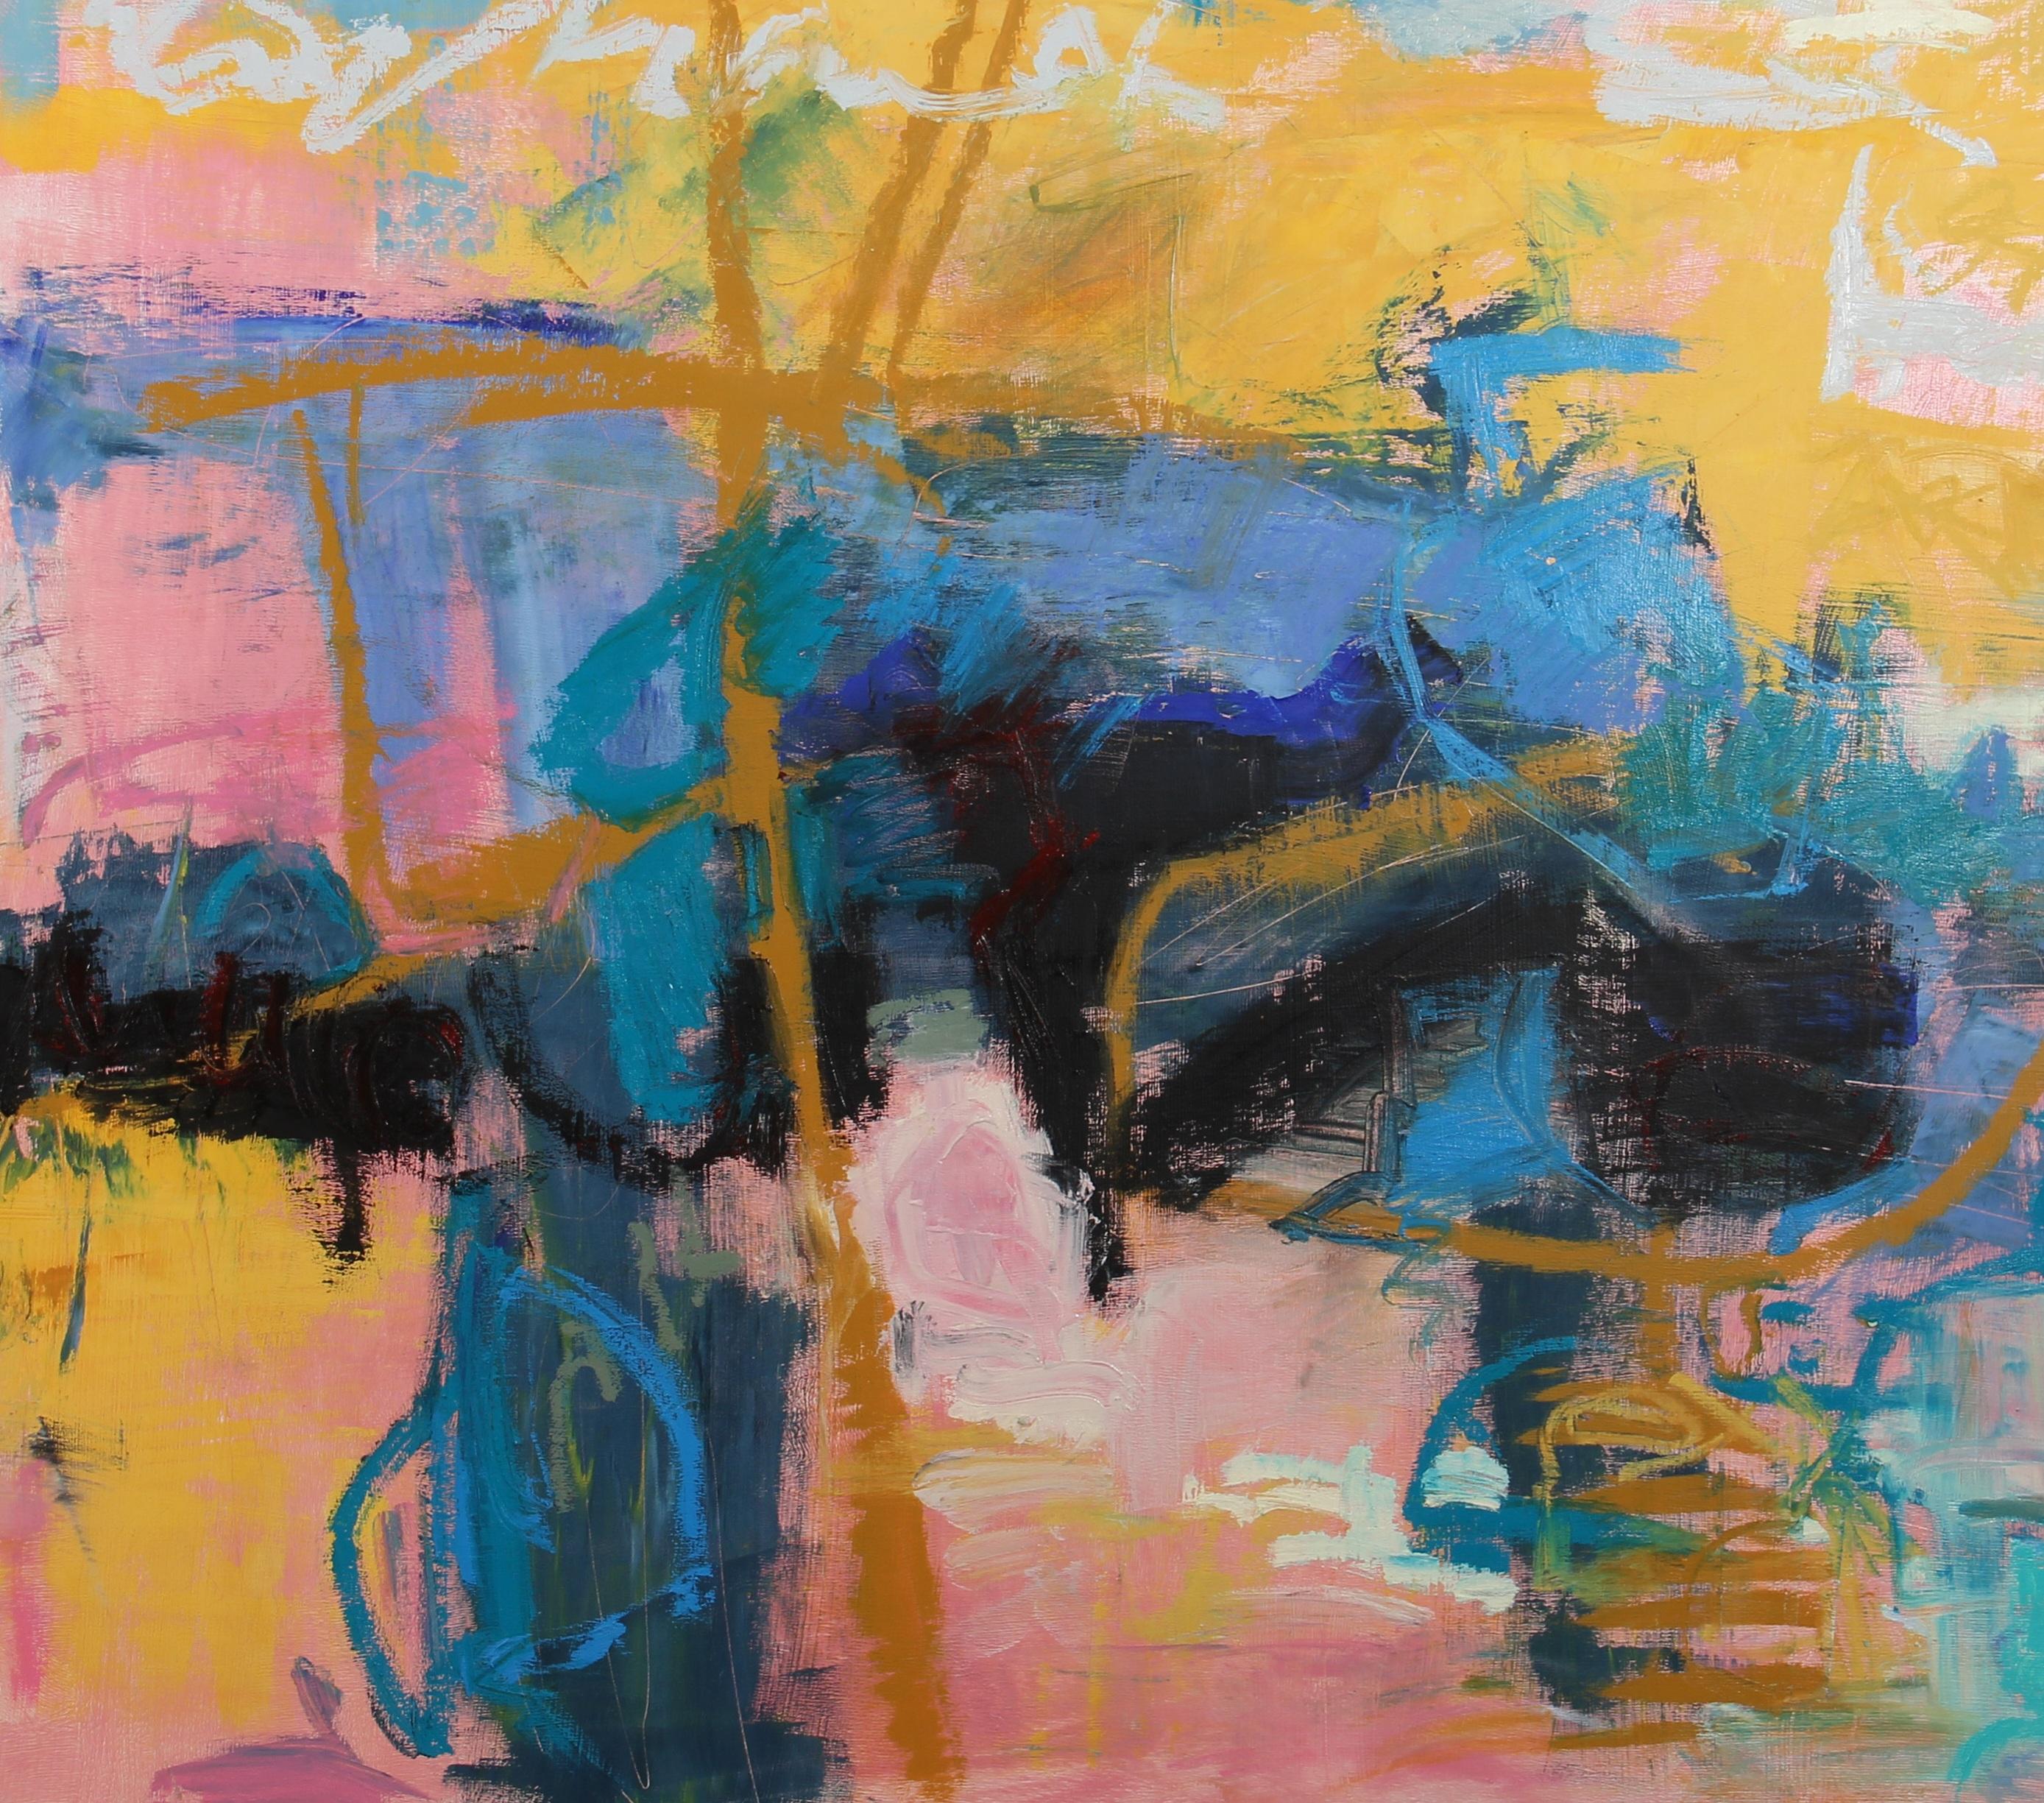 Mid-Summer Johnson Summer Creek, Oil on Panel, 36x36, Abstract, 